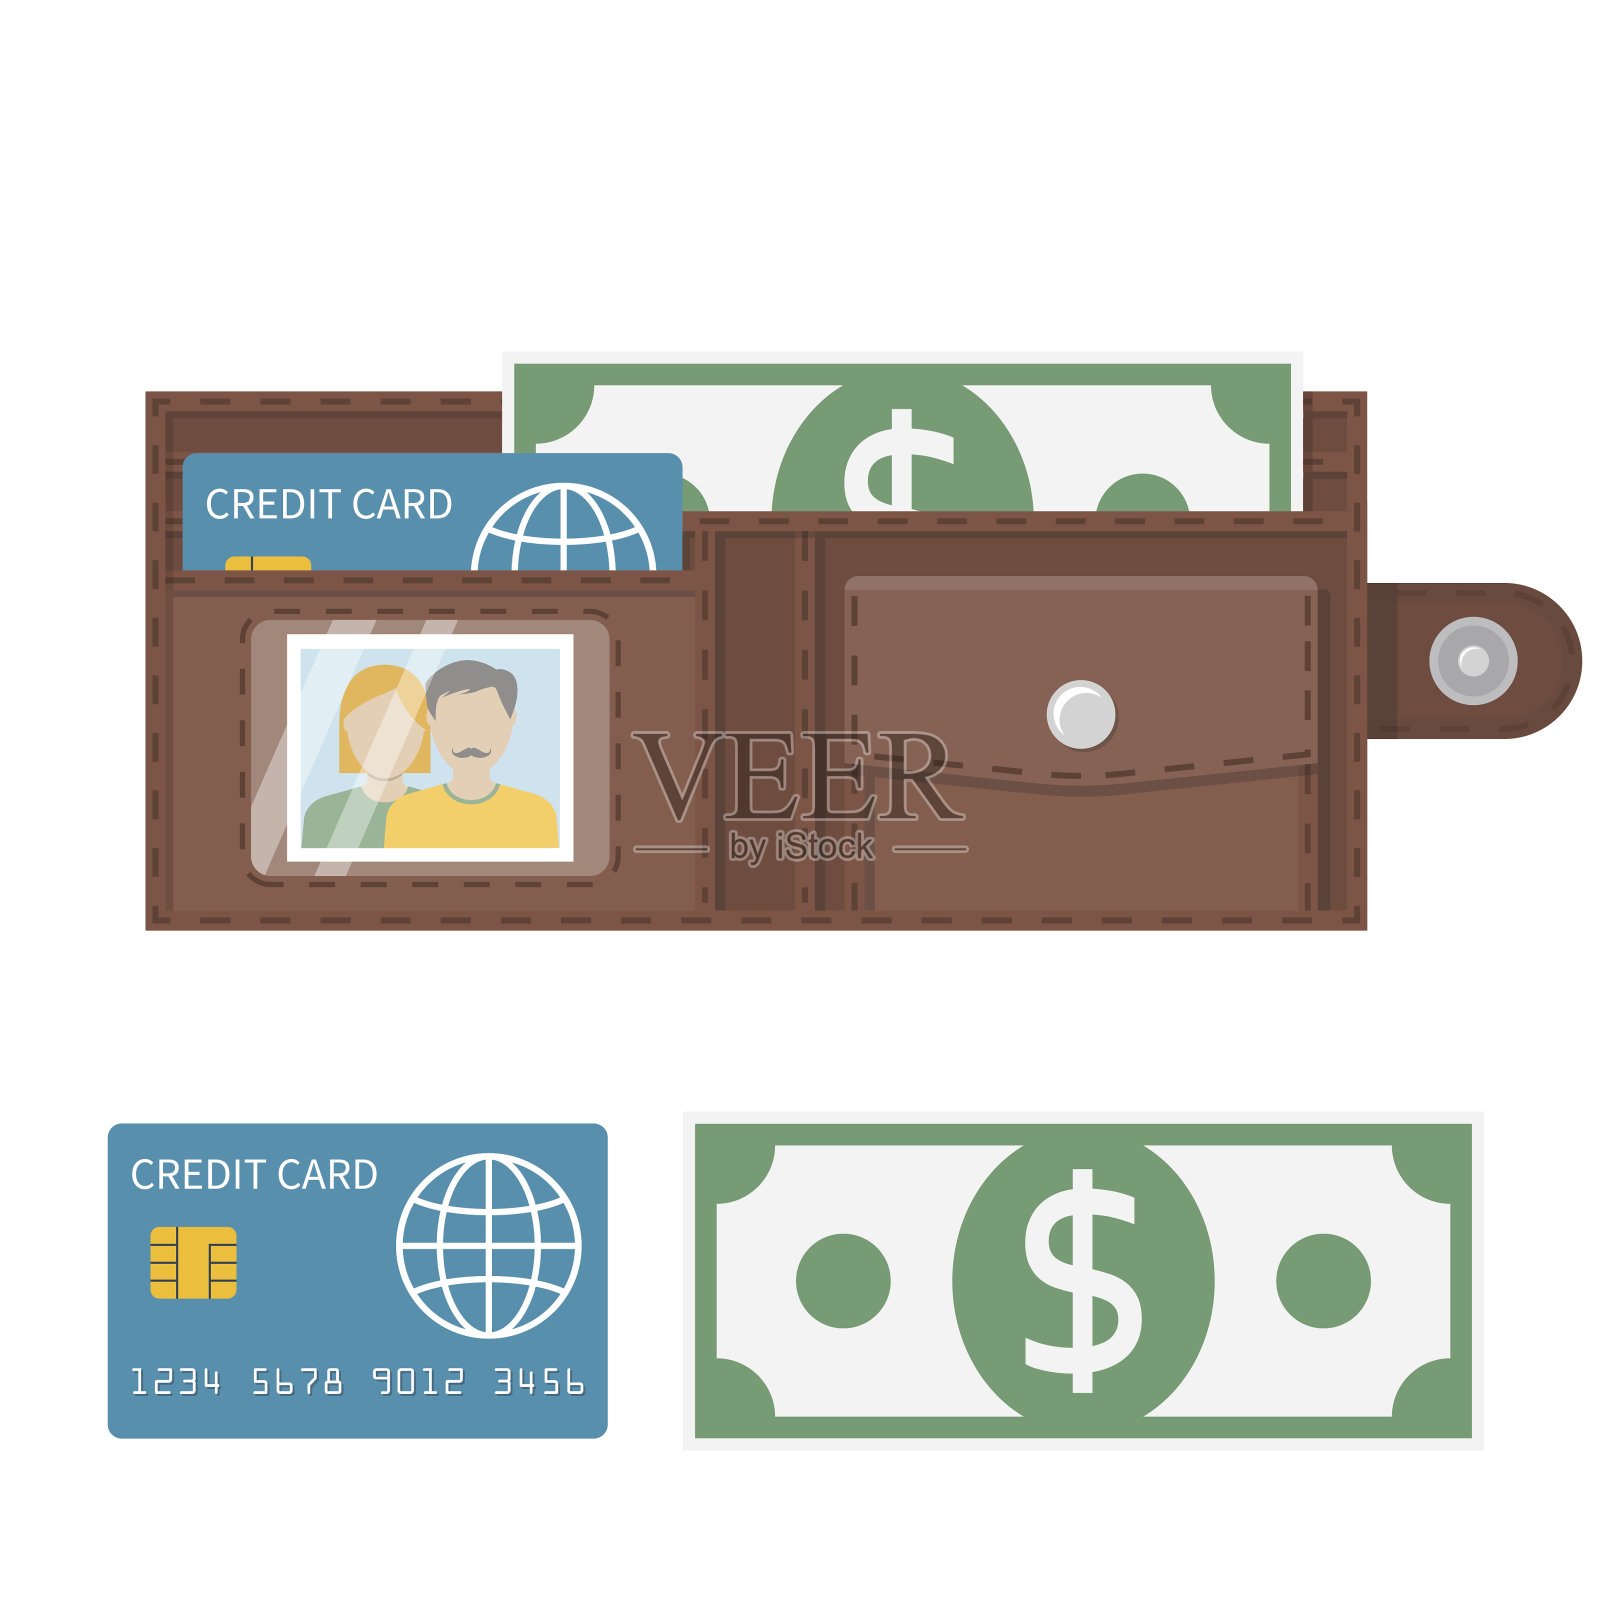 돈 일러스트 일러스트이없는 빈 지갑, 돈이 없다, 간결한, 돈 PNG 일러스트 및 PSD 이미지 무료 다운로드 - Pngtree